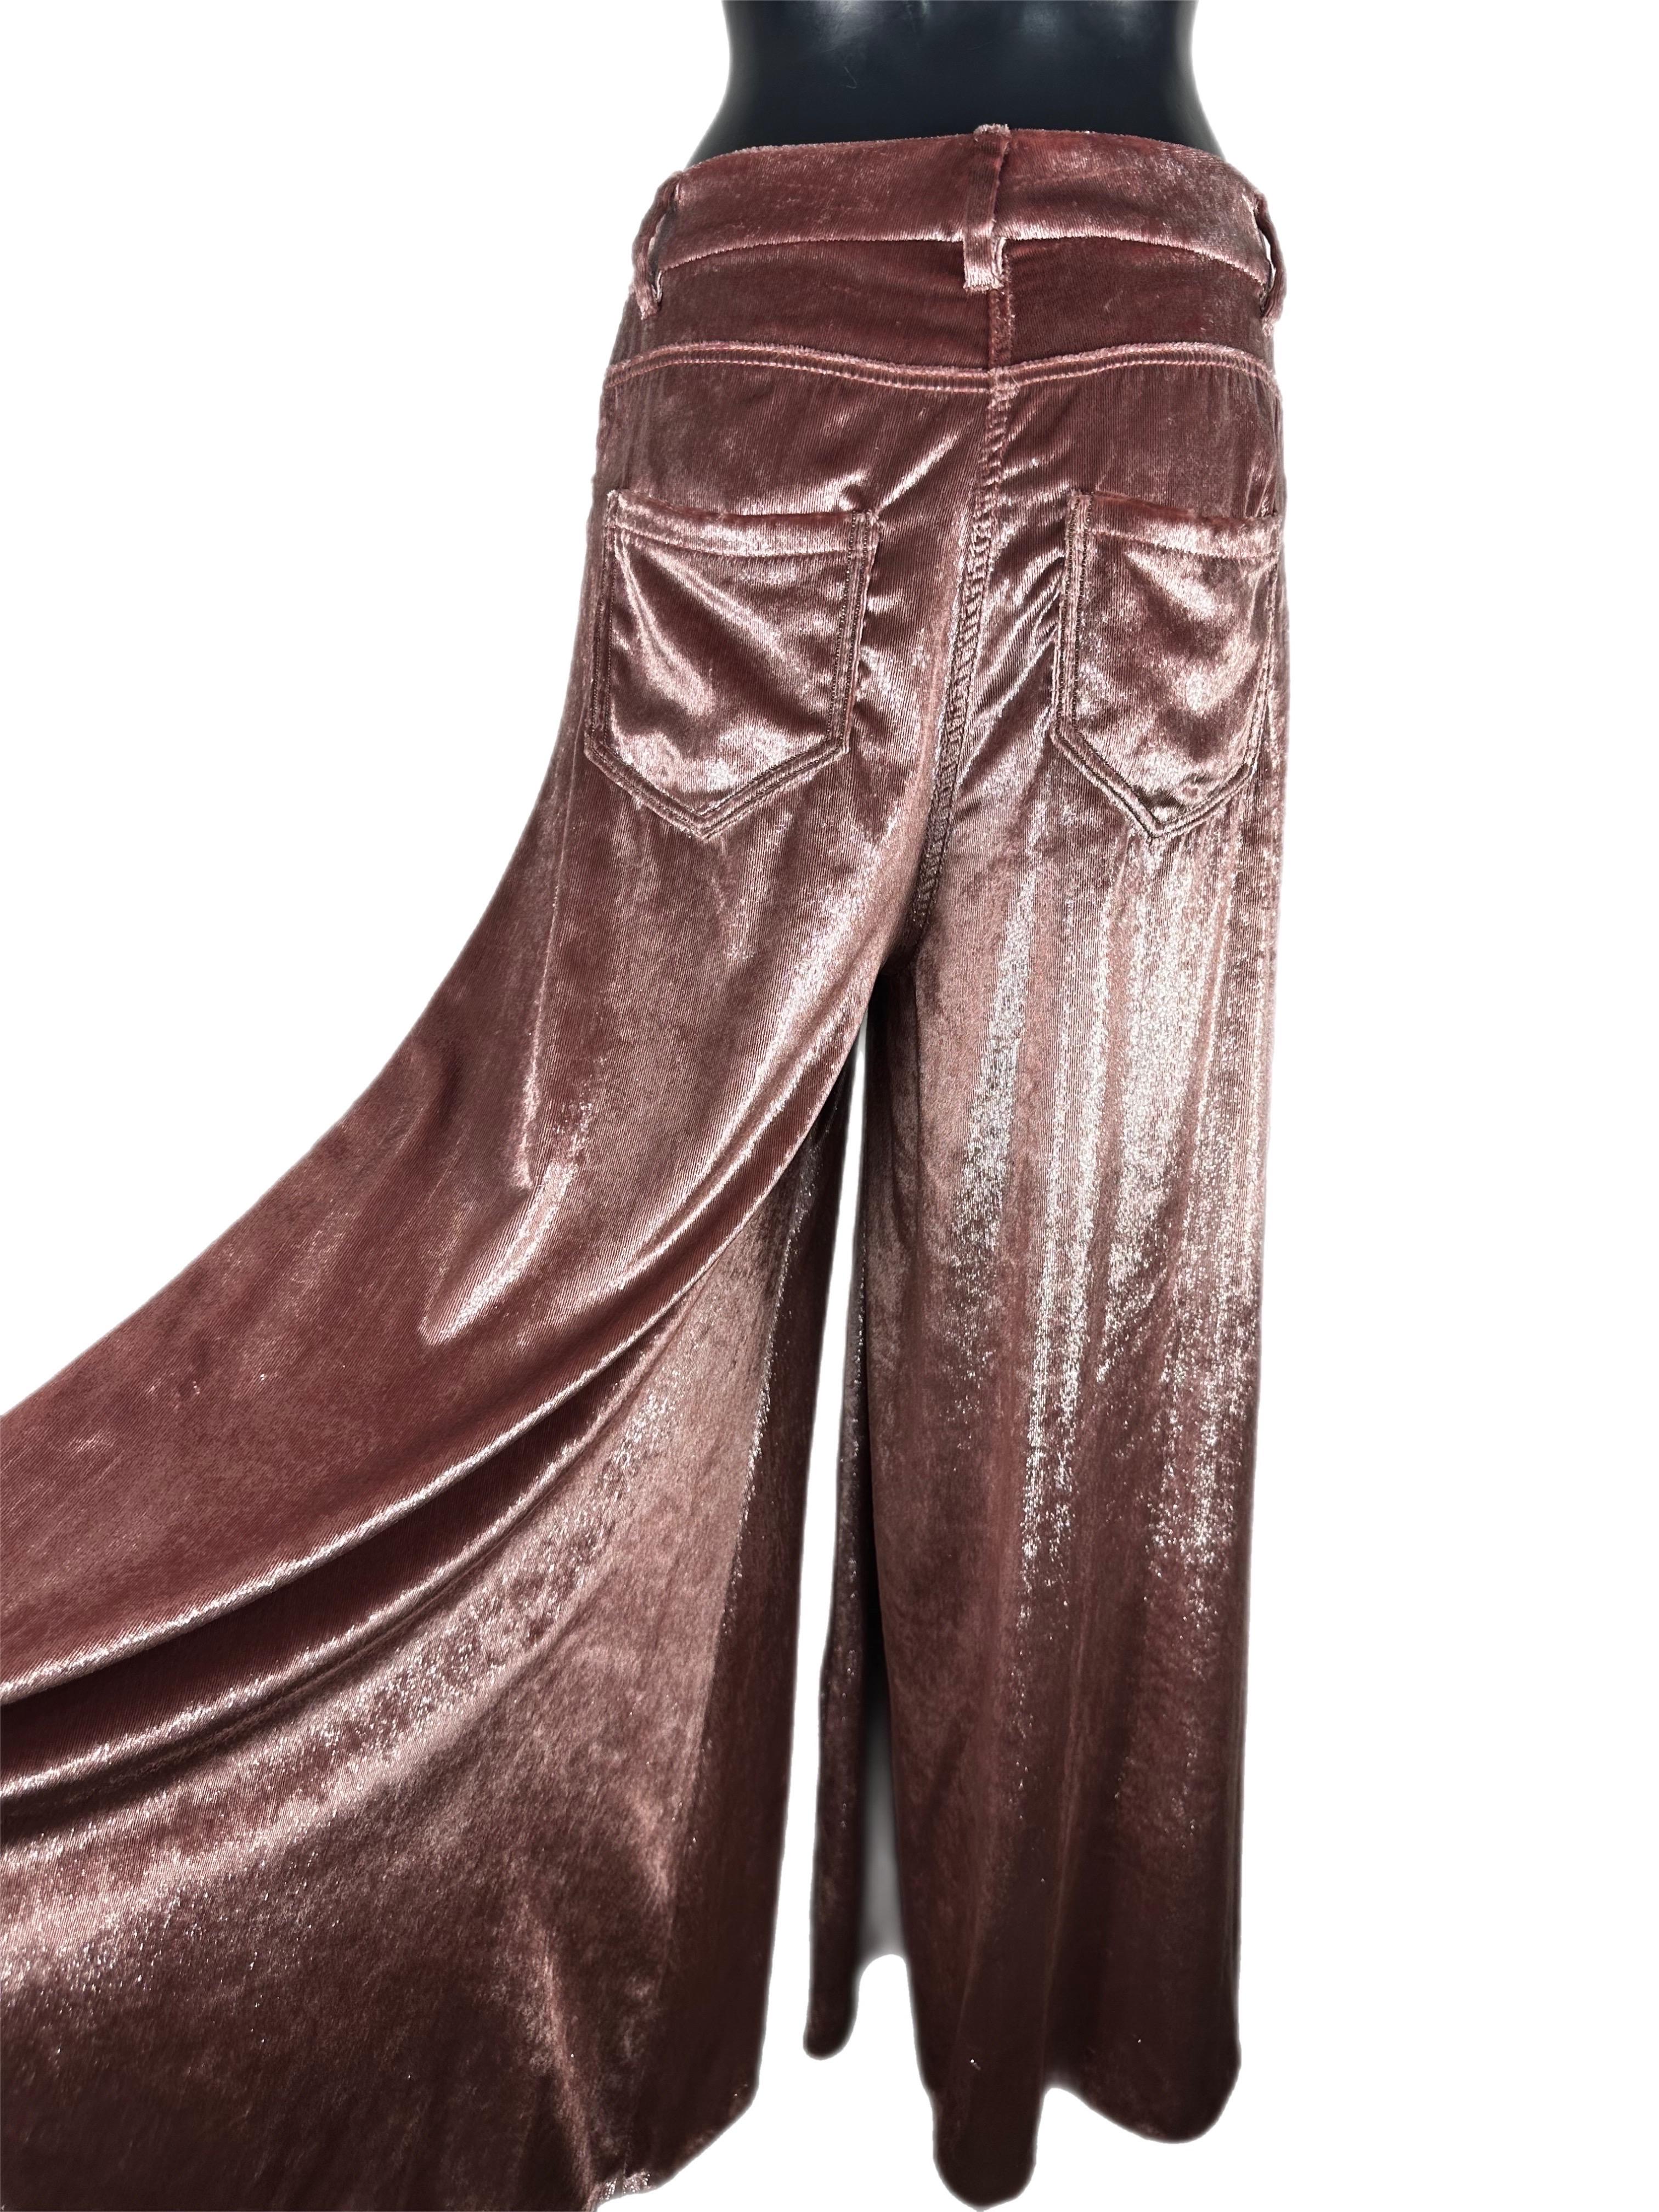 Pantalon palazzo rose Brunello Cucinelli avec fibre métallique. Nouveau avec étiquette
Mesures :
Taille 40cm
Hanches 54cm
Largeur de la jambe au niveau de la cuisse 48cm